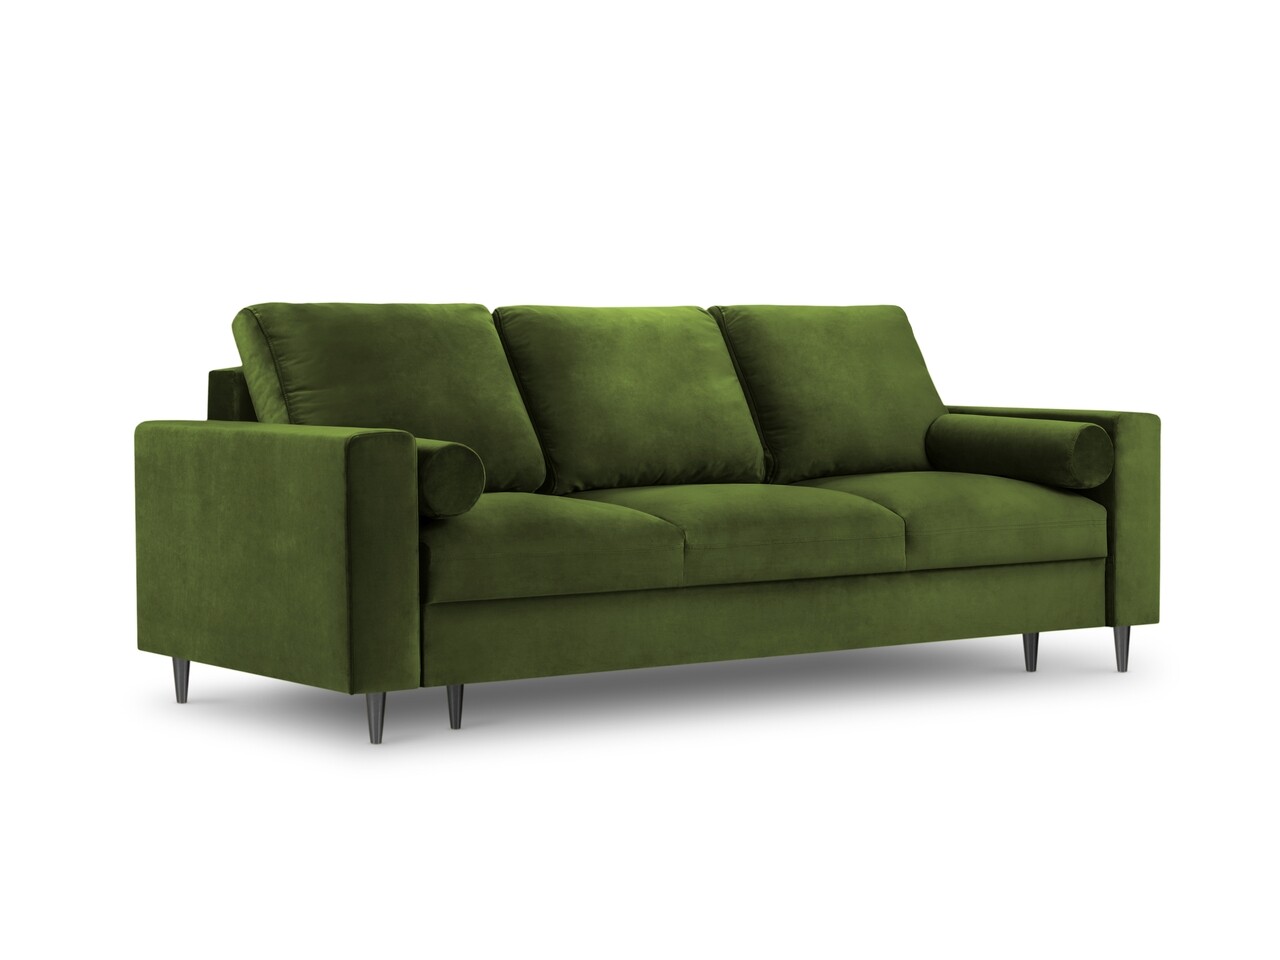 Mazzini sofas kanapéágy, camellia, mazzini kanapék, 3 ülőhely, tárolódobozzal, 220x100x92 cm, bársony, zöld